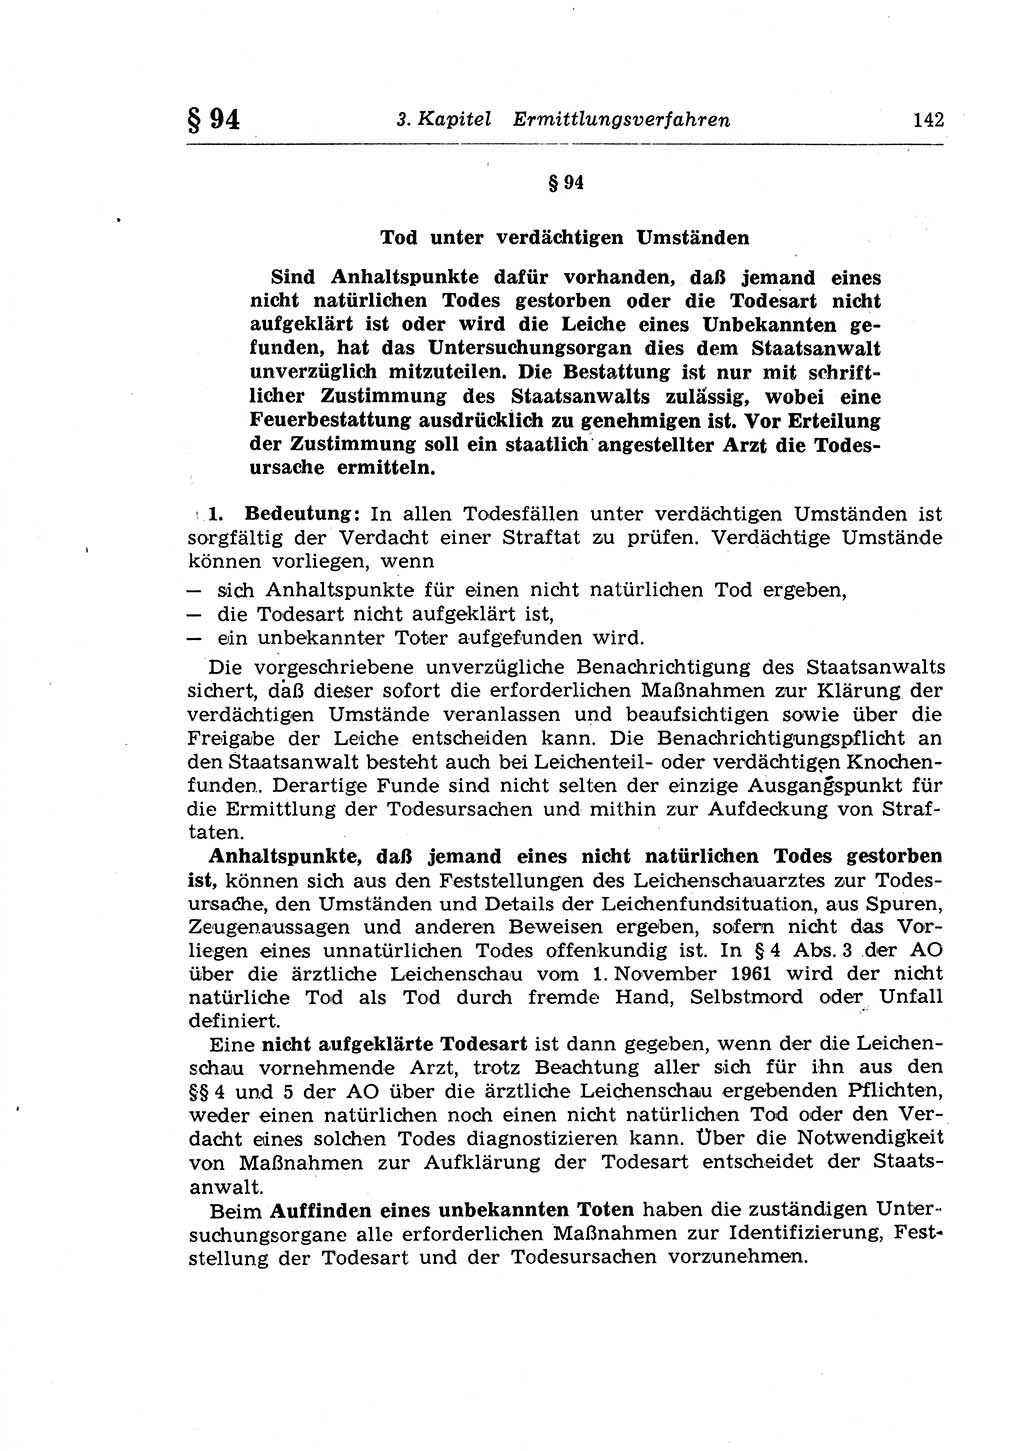 Strafprozeßrecht der DDR (Deutsche Demokratische Republik), Lehrkommentar zur Strafprozeßordnung (StPO) 1968, Seite 142 (Strafprozeßr. DDR Lehrkomm. StPO 19688, S. 142)